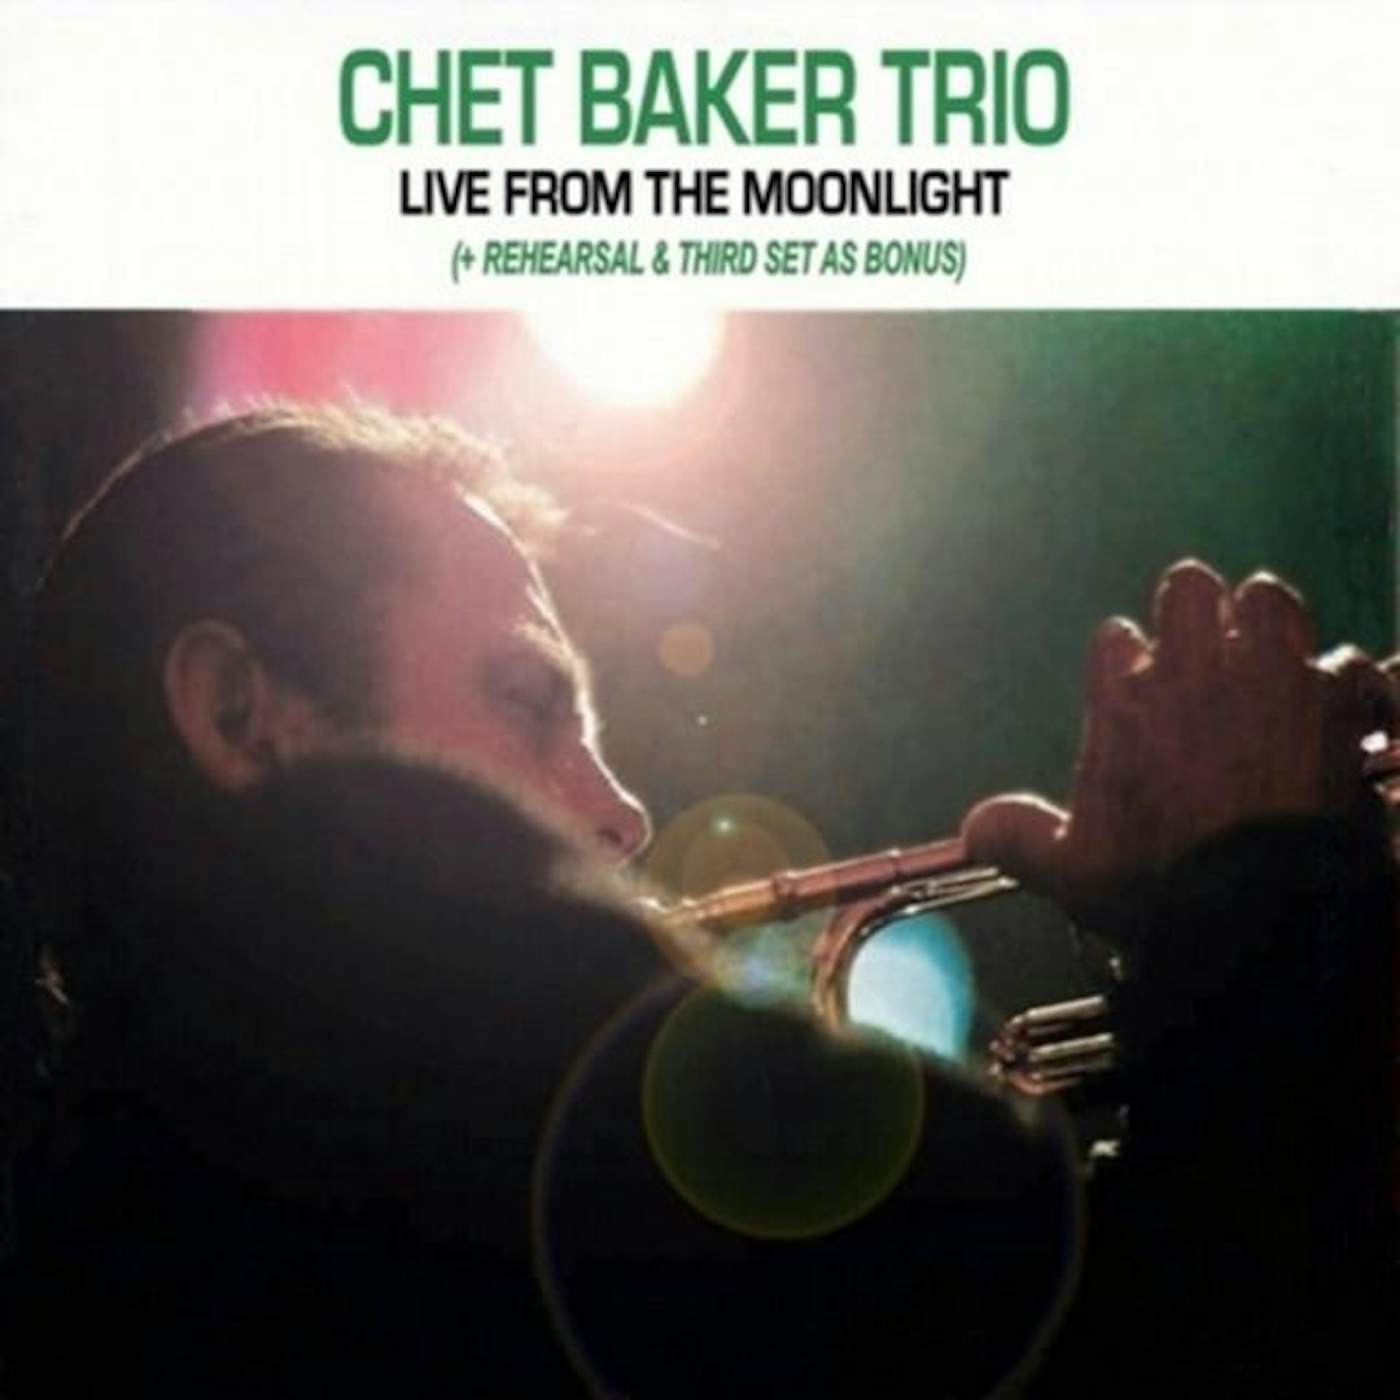 Chet Baker Trio